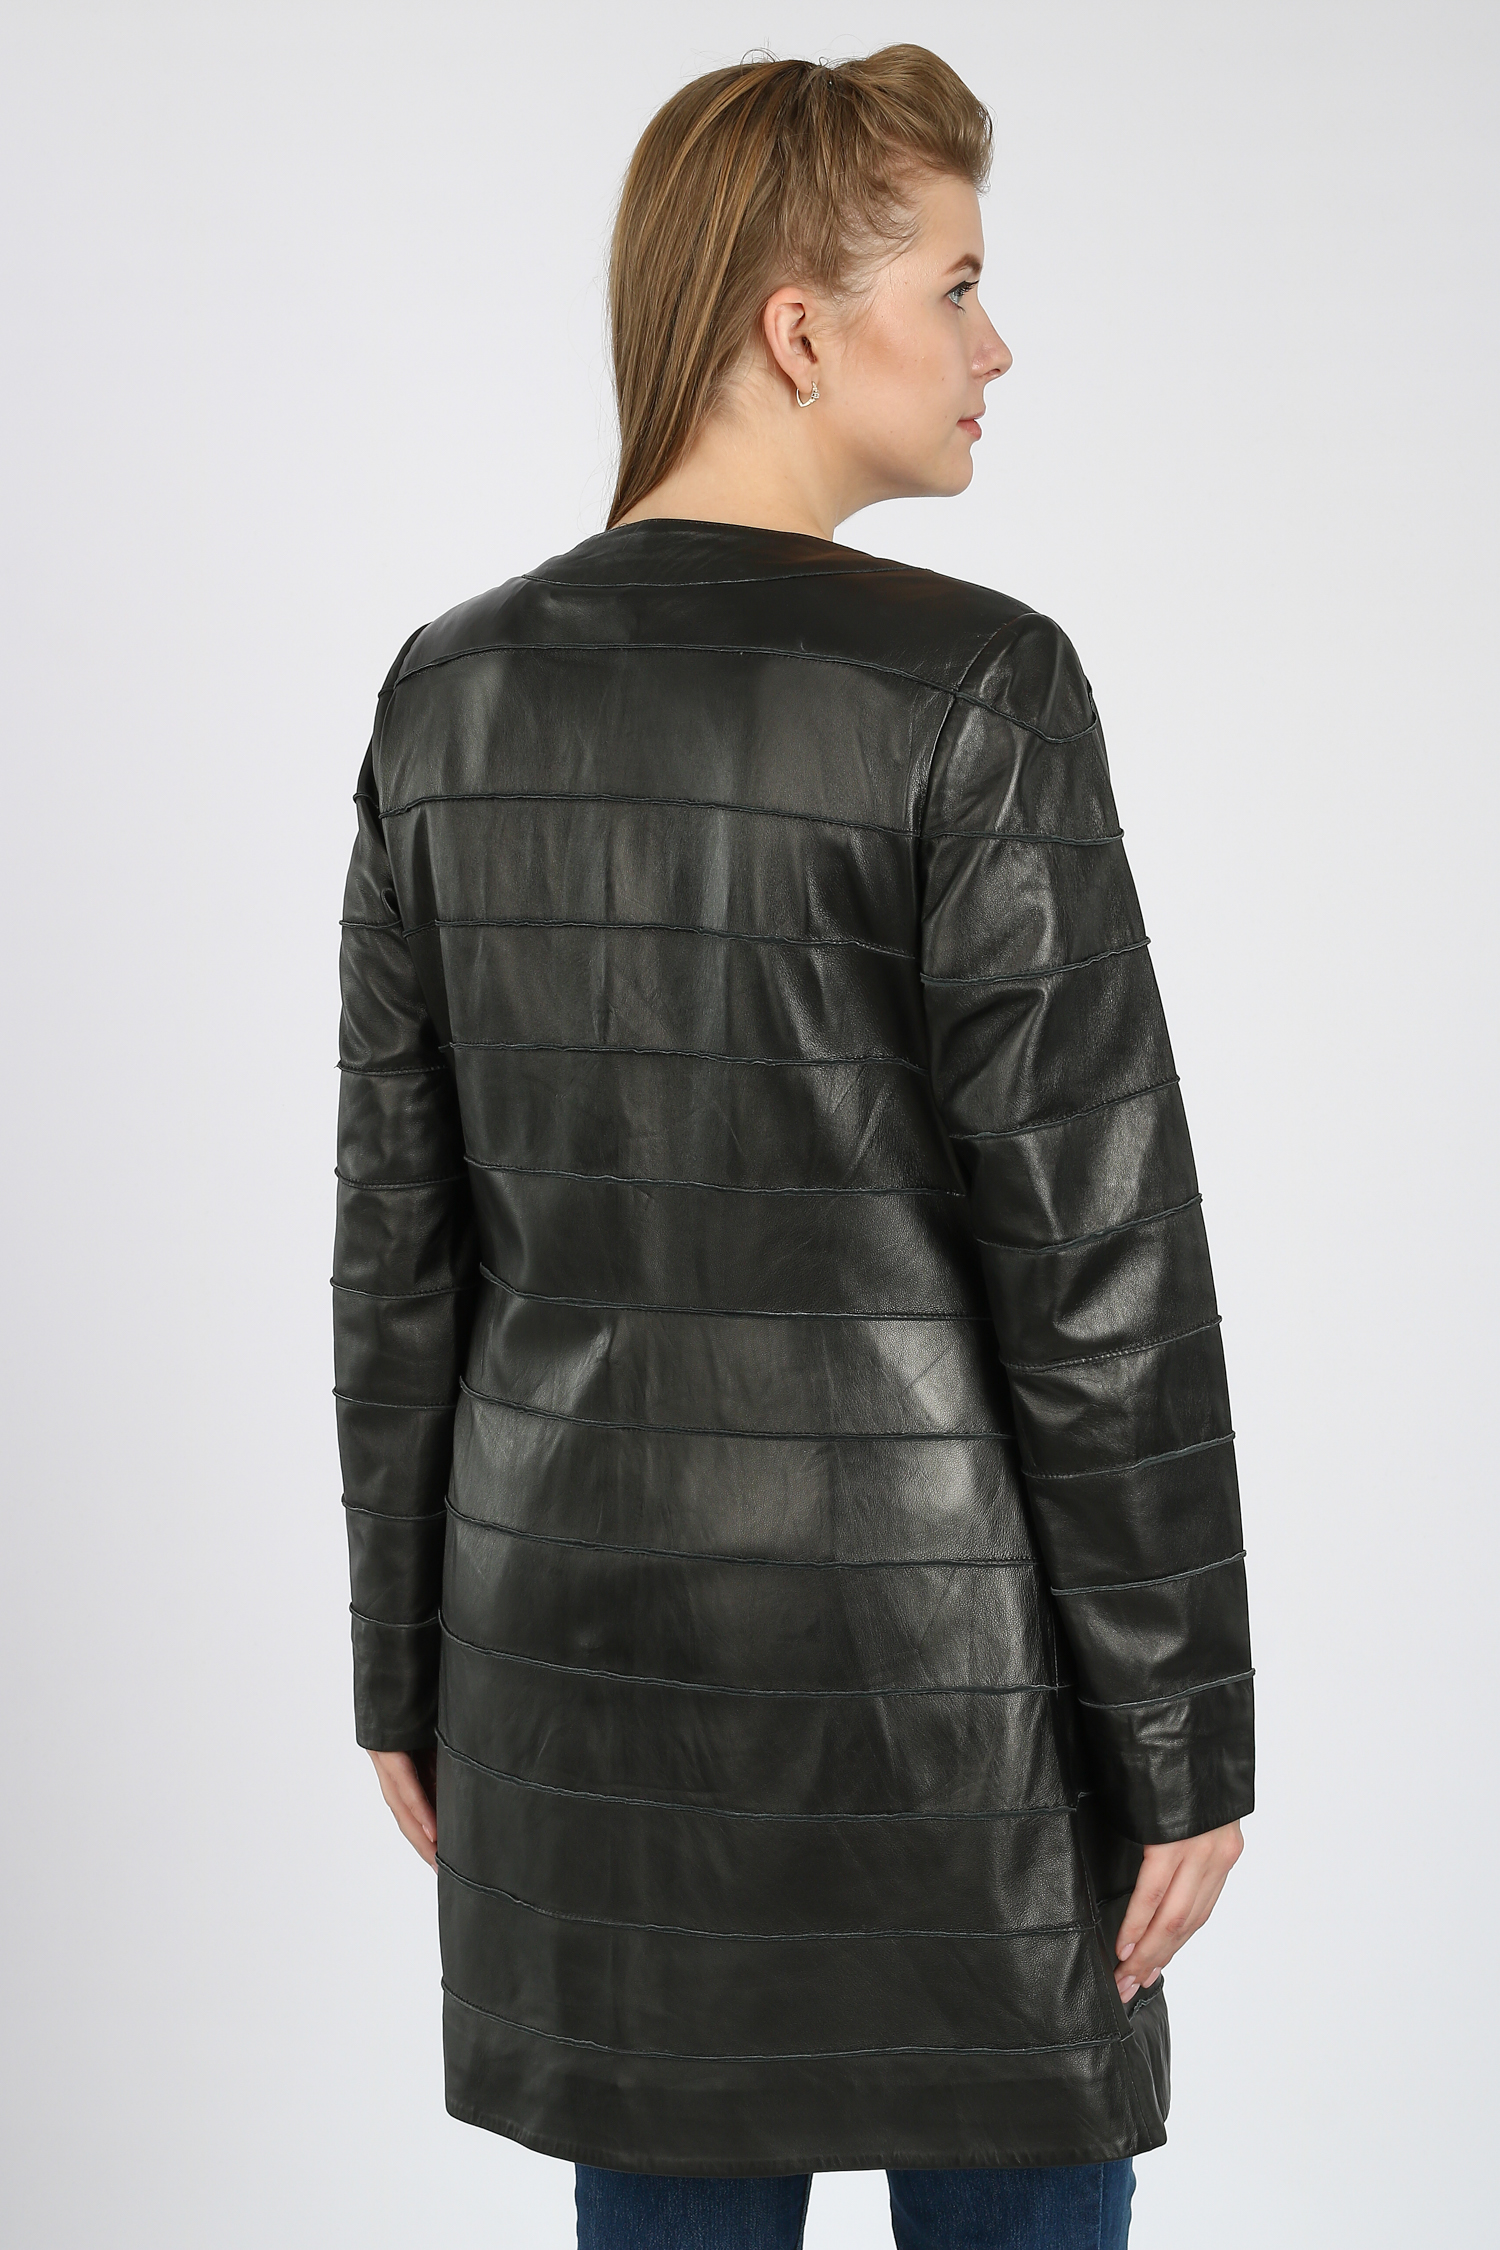 Женская кожаная куртка из натуральной кожи без воротника, без отделки